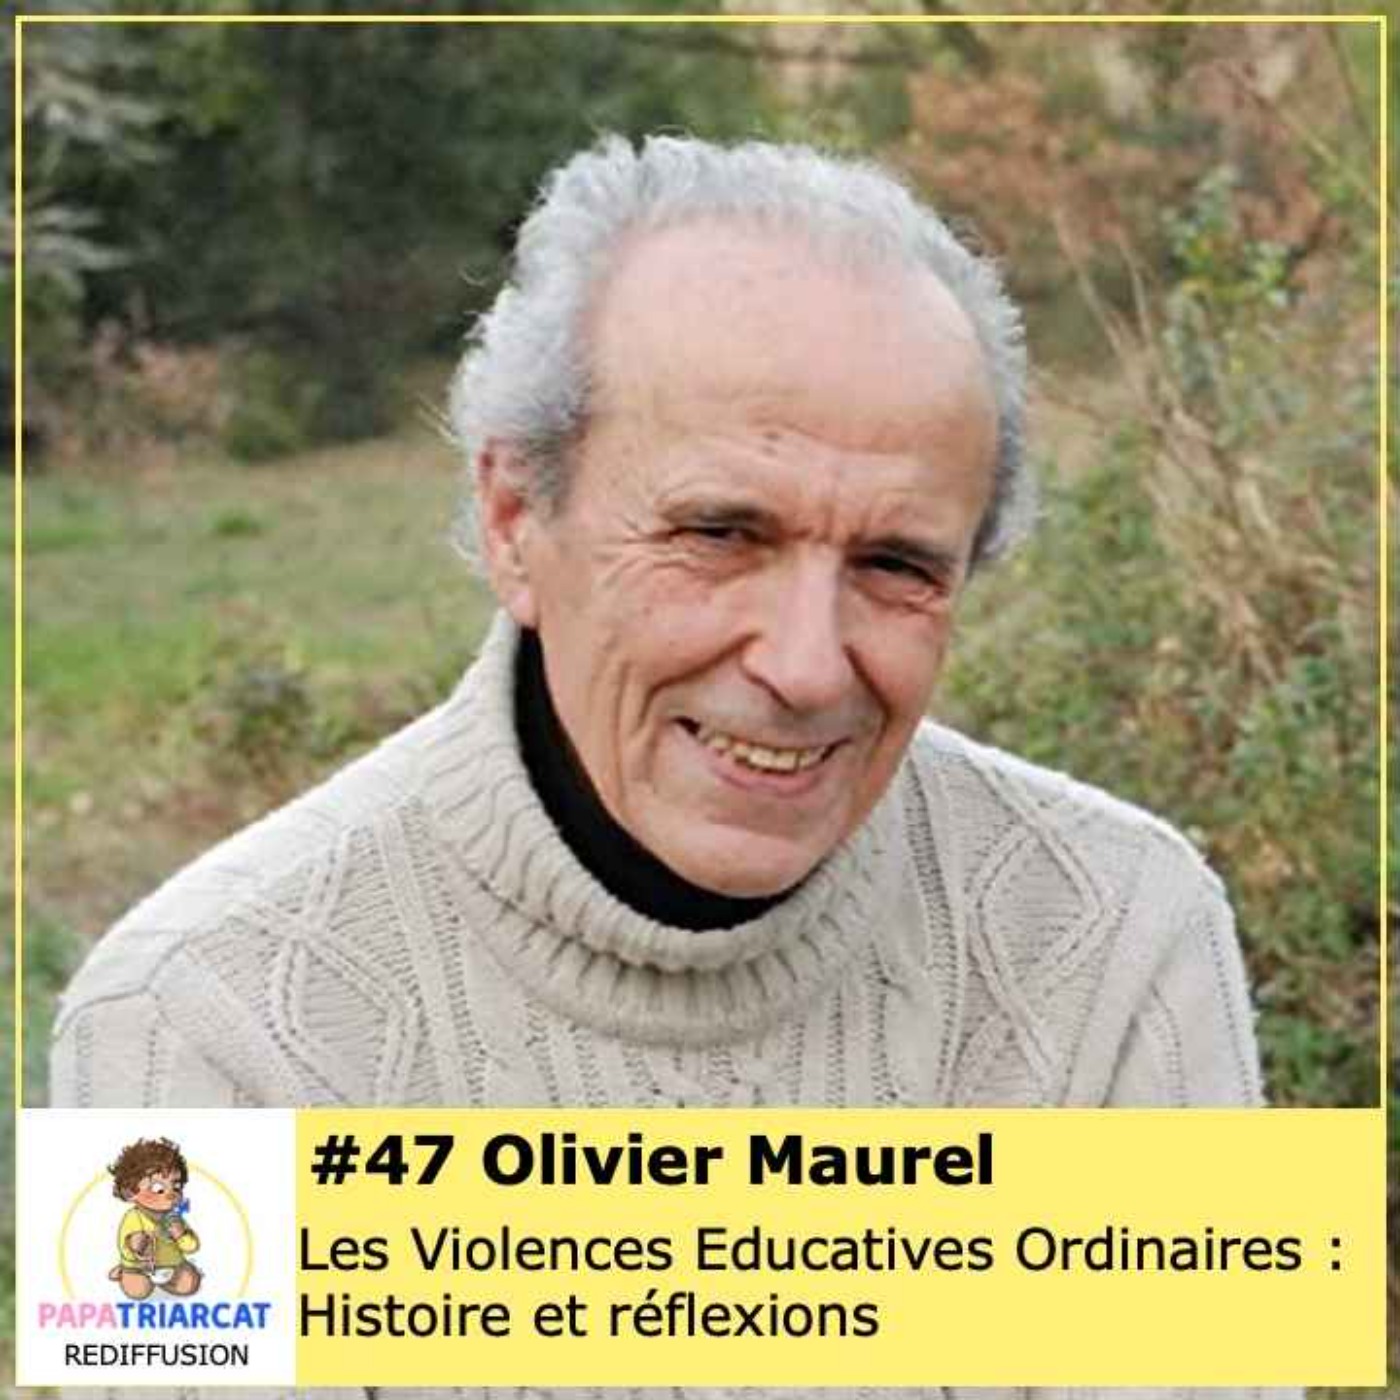 REDIFFUSION #47 - Les violences éducatives ordinaires : histoire et réflexions - Olivier Maurel